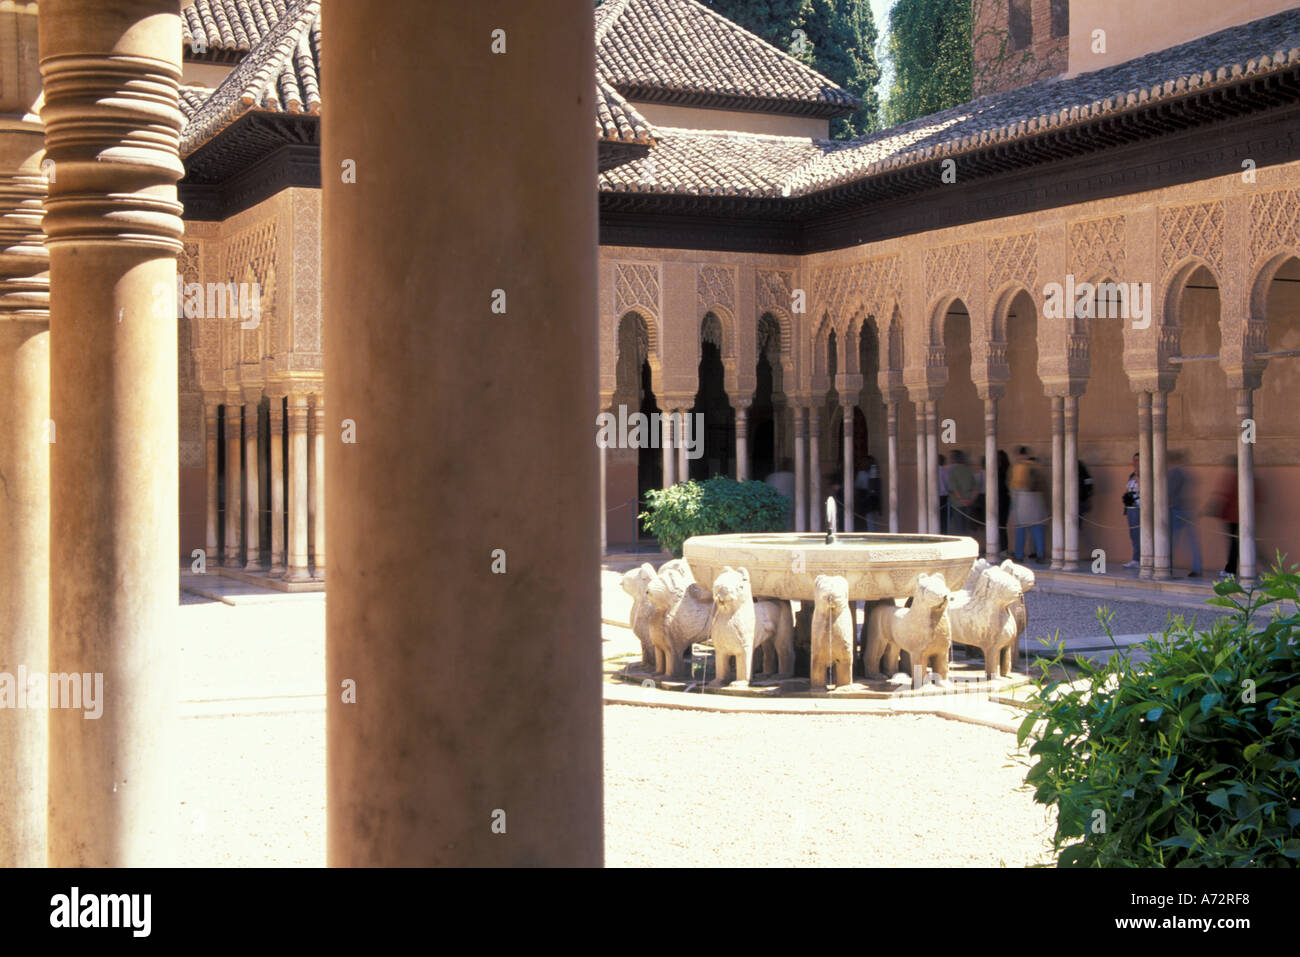 Espagne, Andalousie, Grenade Patio de los Leones de l'Alhambra, un palais maure fortifié (13th-14th C.) Banque D'Images